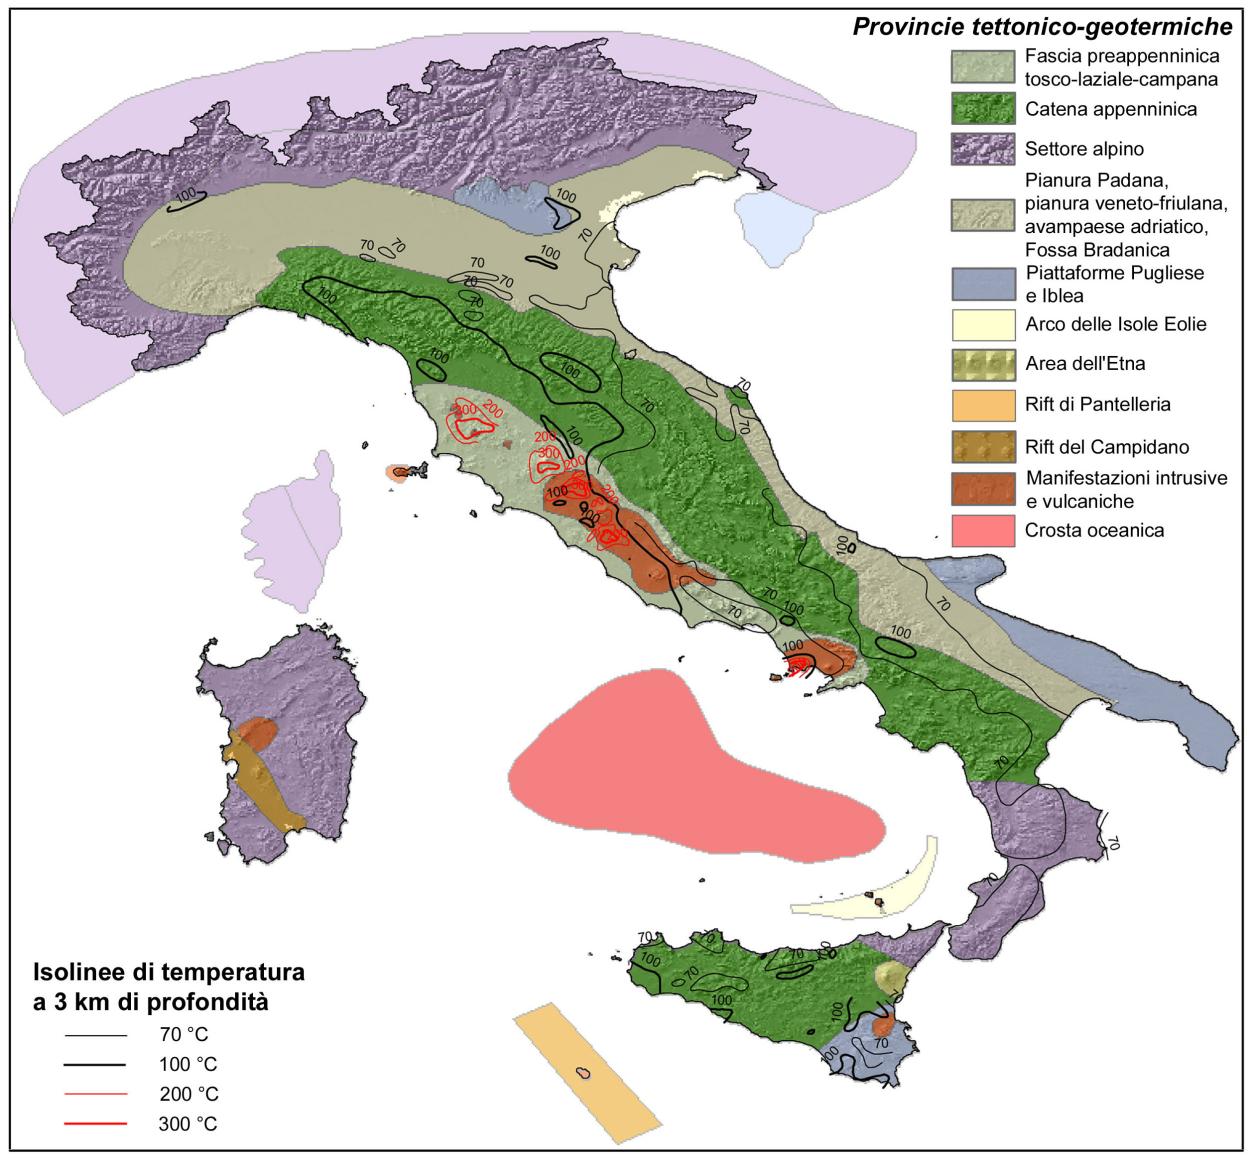 Caratterizzazione geotermica dell'italia Principali serbatoi geotermici e principali provincie tettonico-geotermiche I serbatoi geotermici sono volumi rocciosi abbastanza profondi (almeno qualche km)